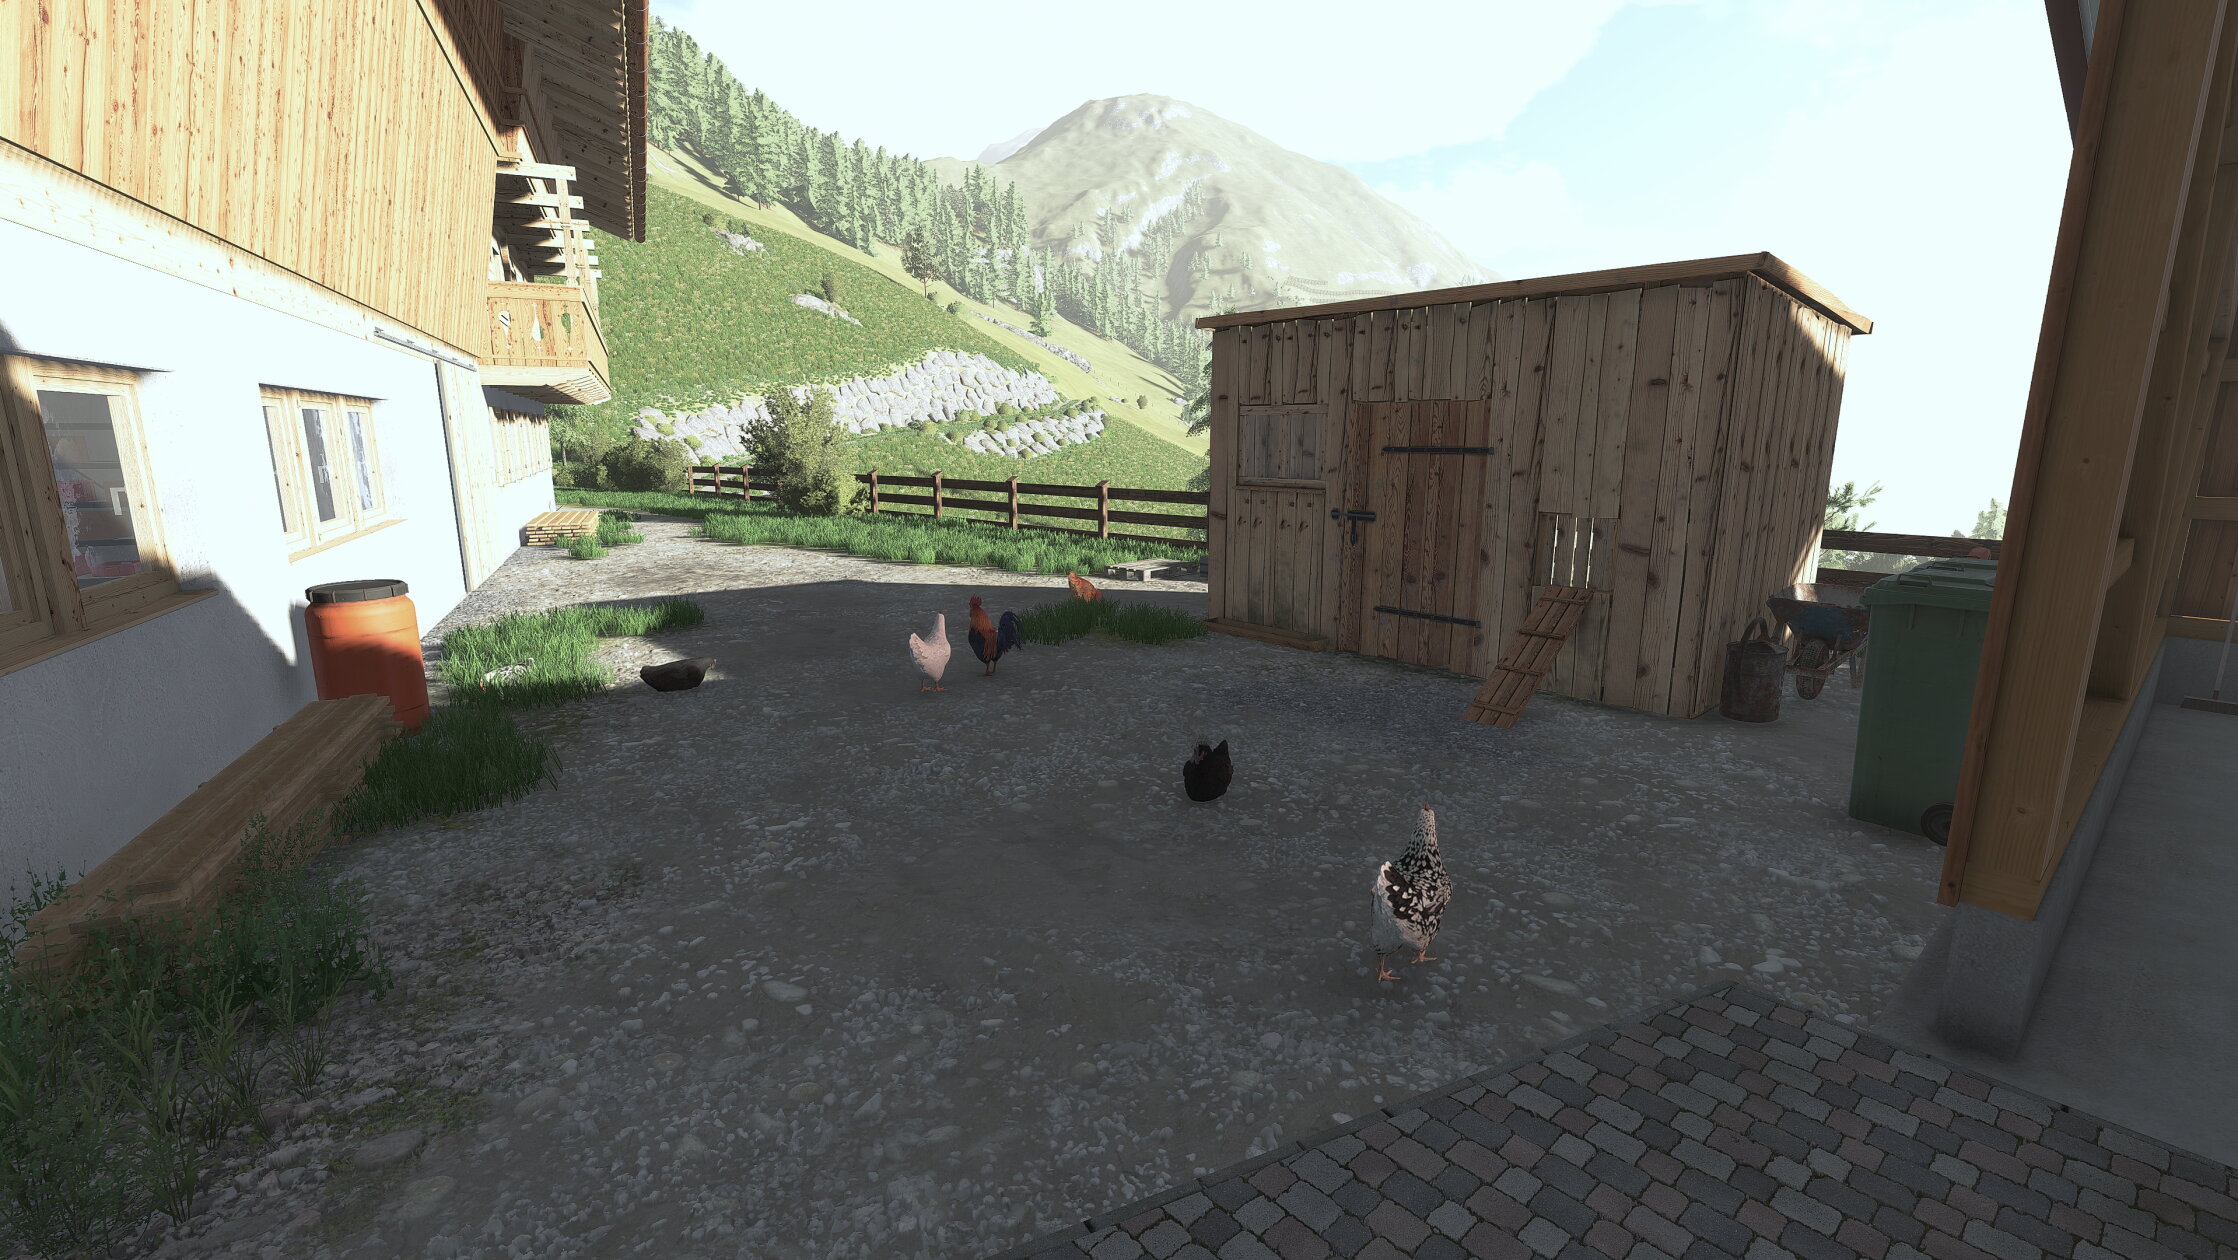 Hühner gibts jetz auch aufn Berghof